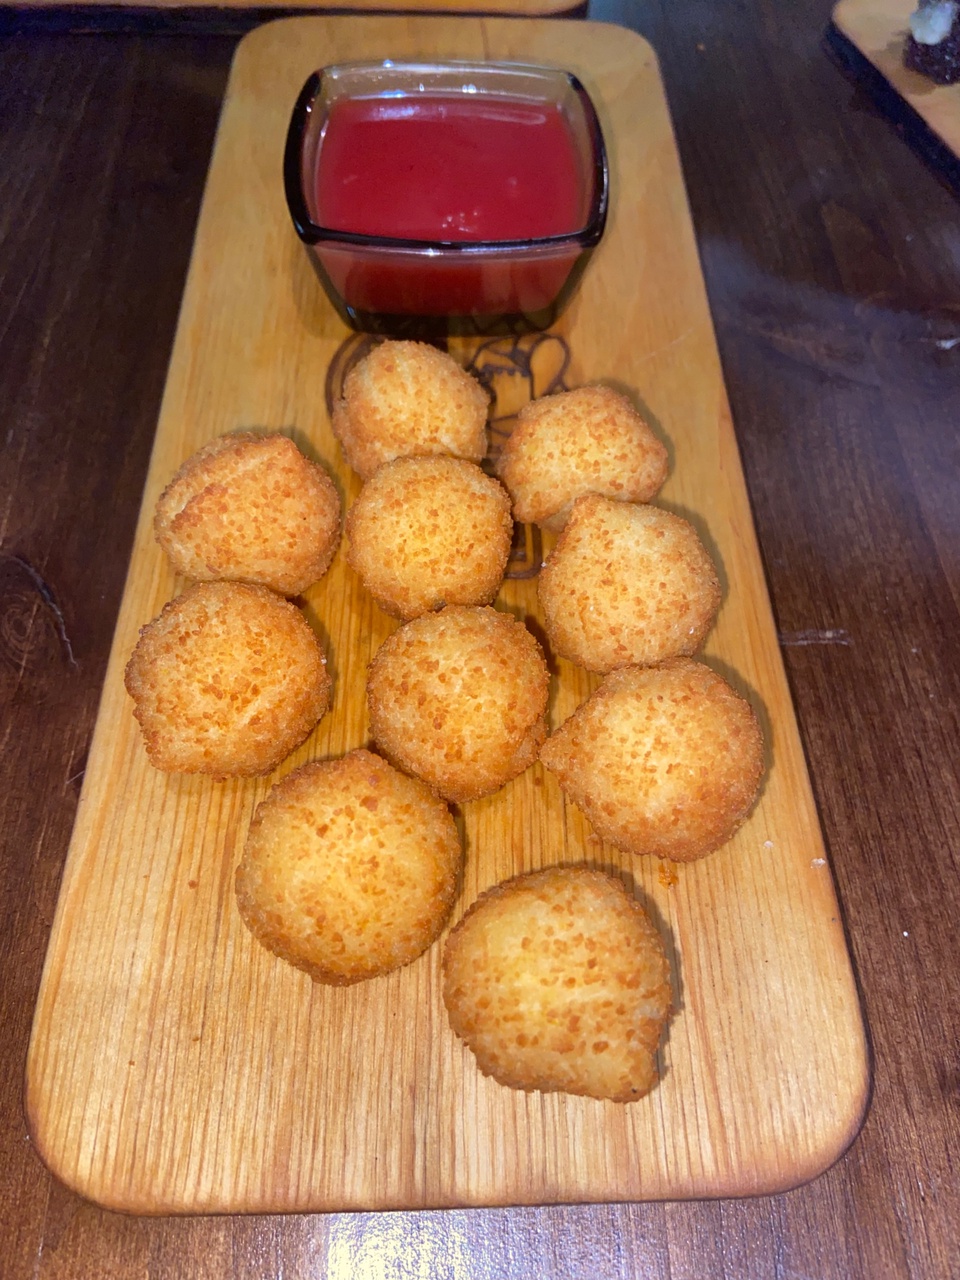 Картофельные Шарики с красным соусом - 100 ₽, заказать онлайн.